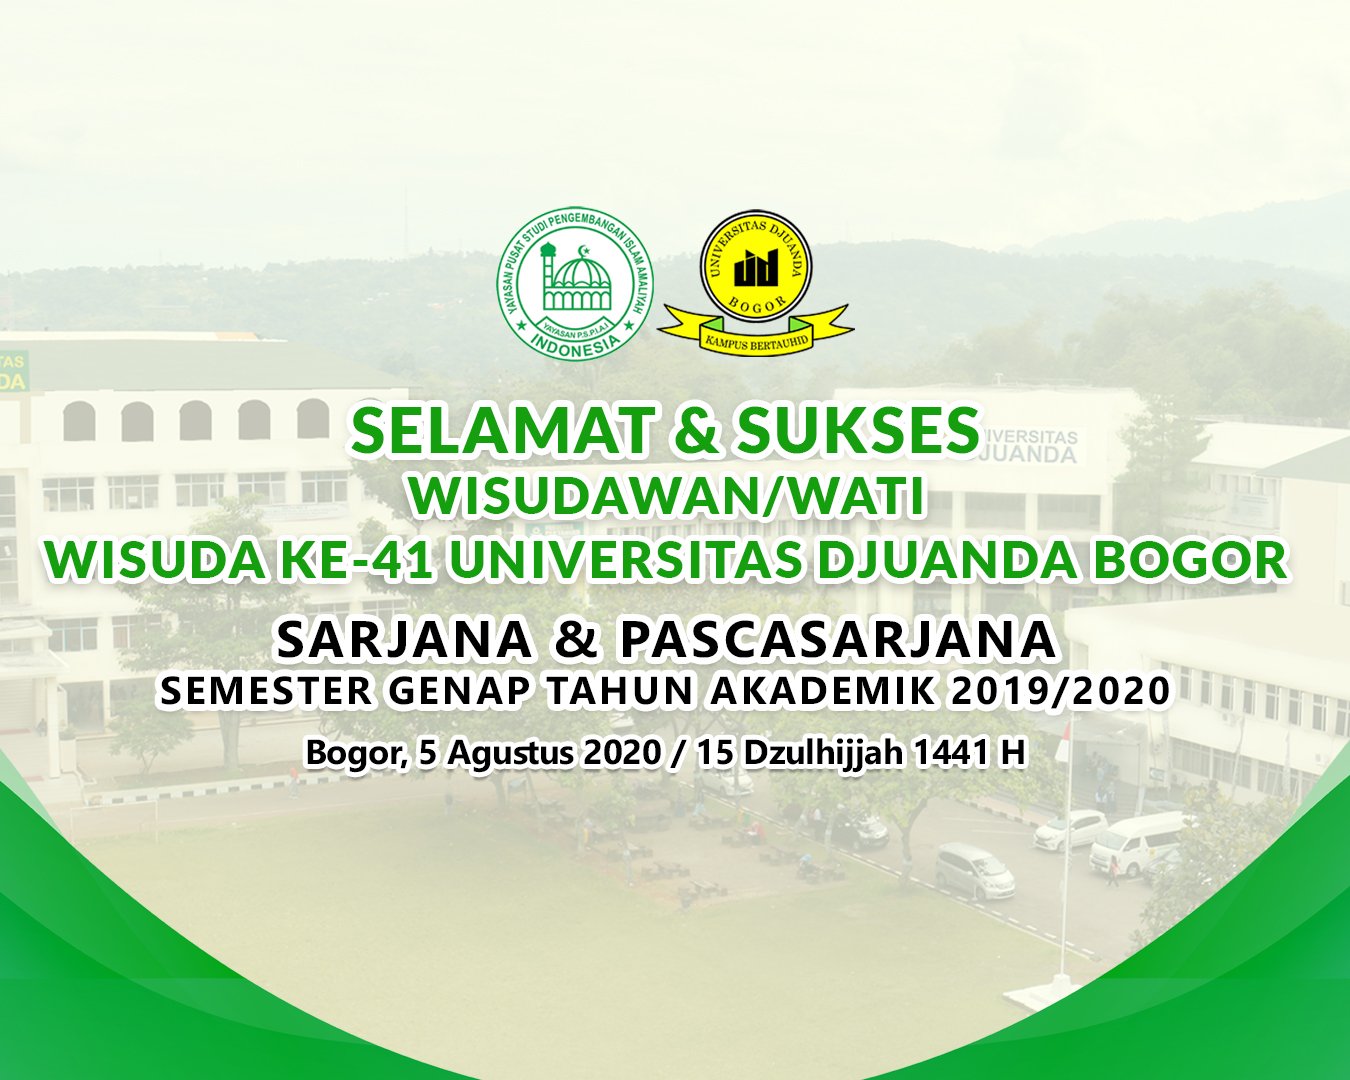 Selamat dan Sukses Wisudawan/wati ke-41 Universitas Djuanda Bogor